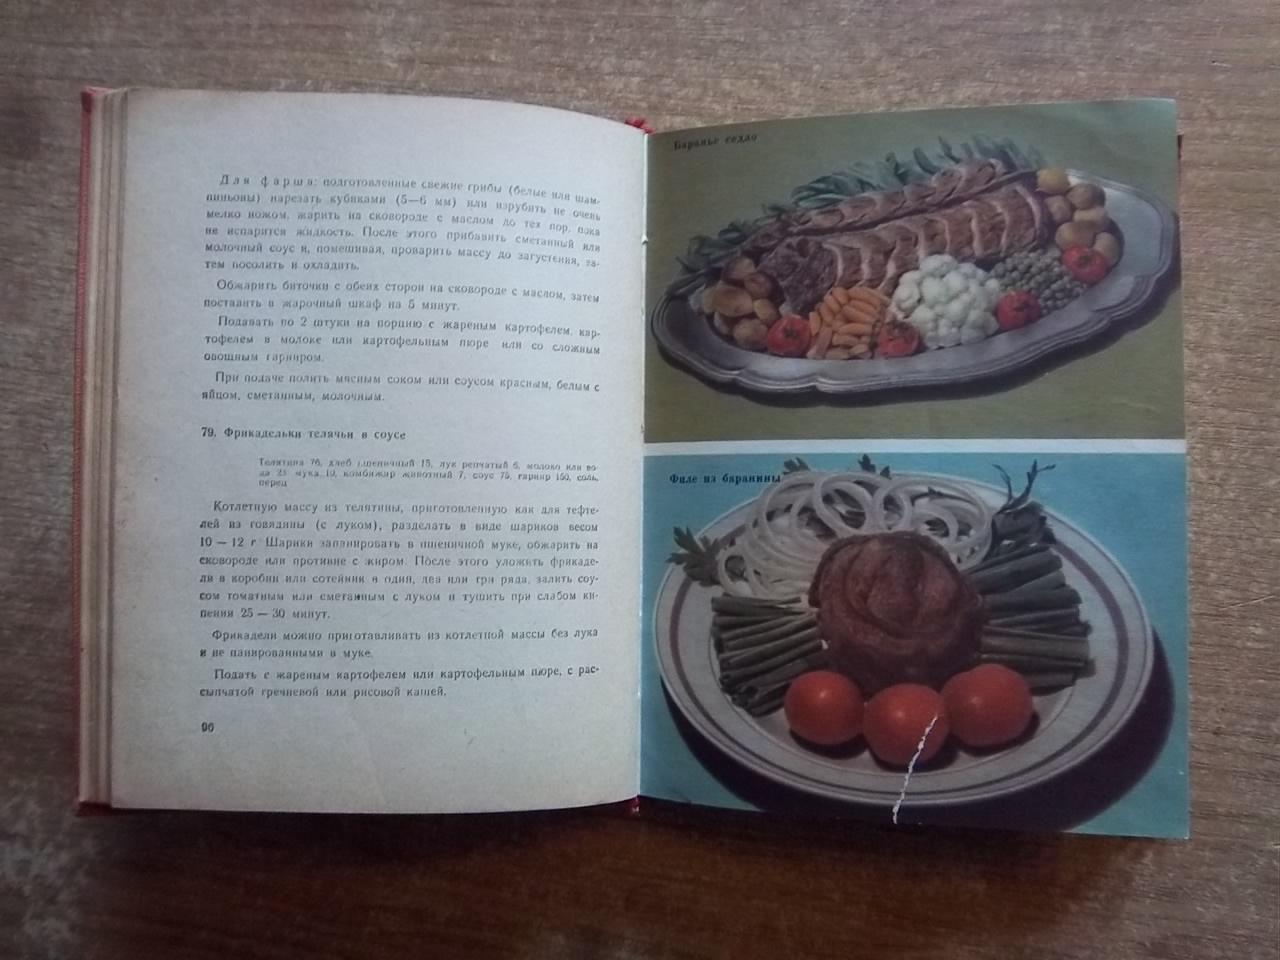 Грознов С., Никашин Ф.	Мясные блюда. «Библиотека повара». 1